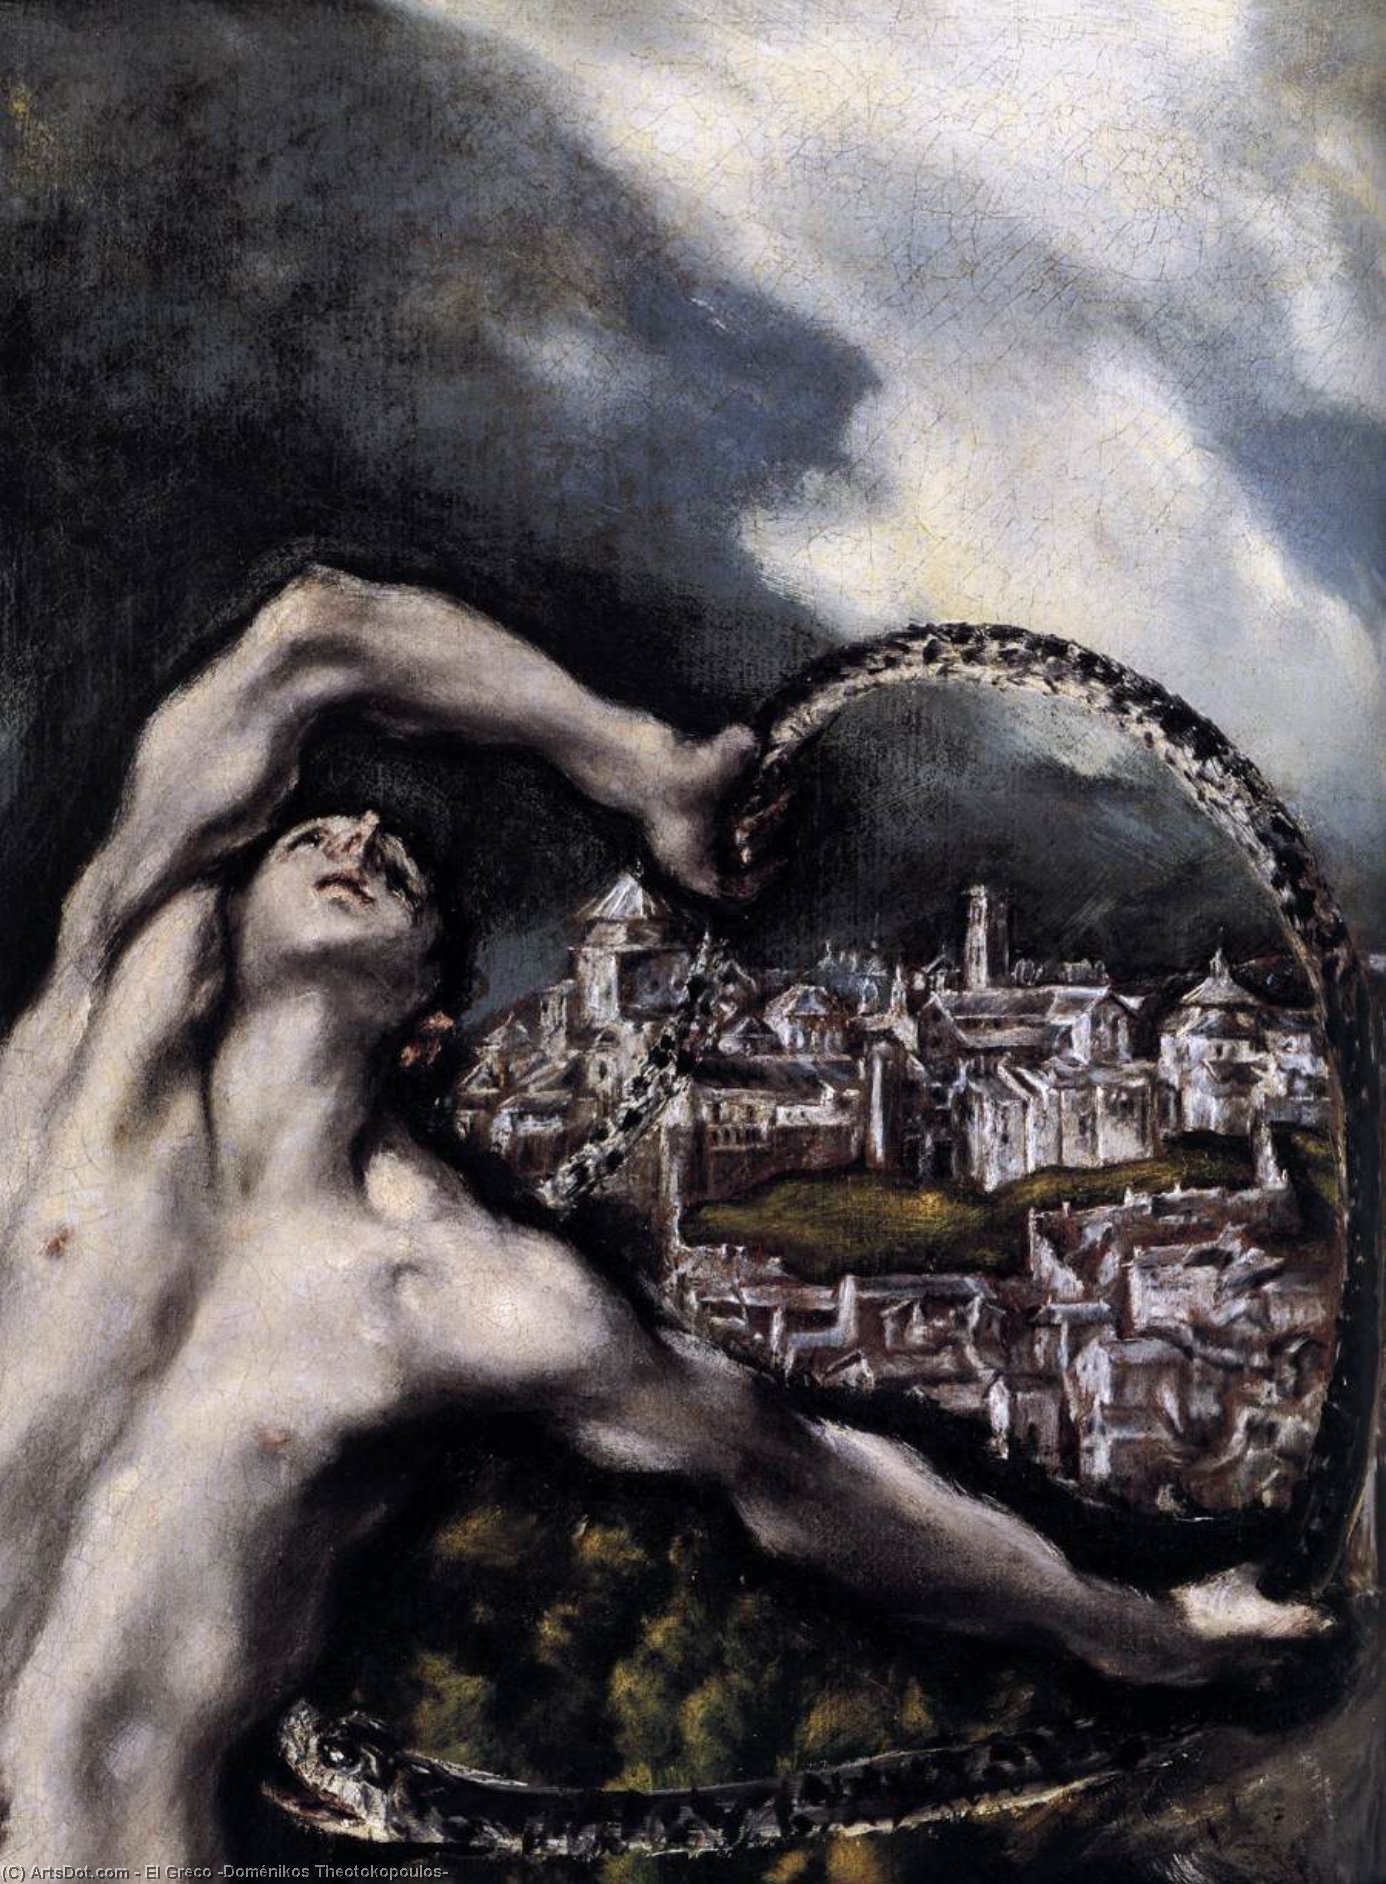 WikiOO.org - Encyclopedia of Fine Arts - Maleri, Artwork El Greco (Doménikos Theotokopoulos) - Laocoön (detail)